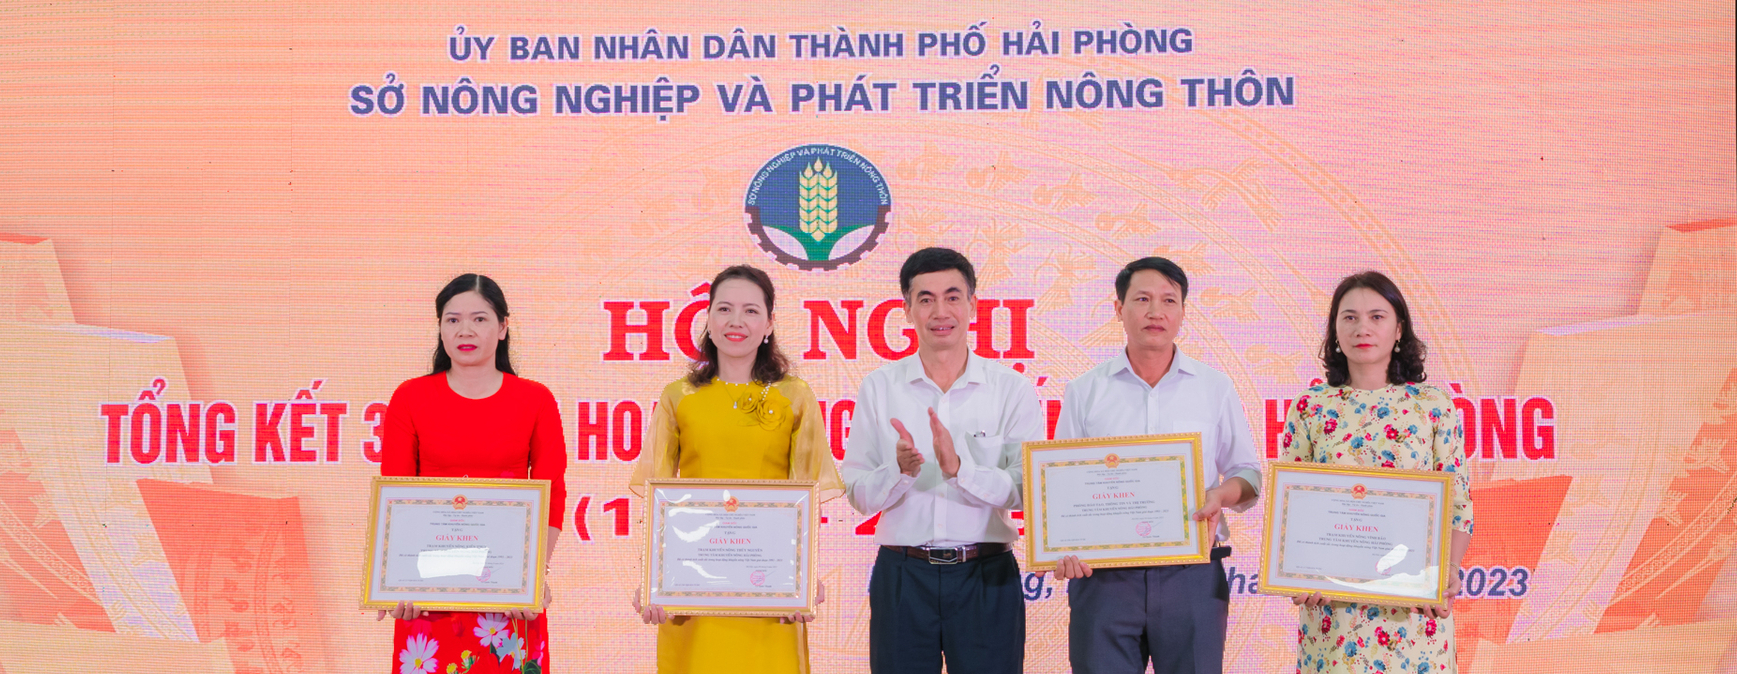 Ông Hoàng Văn Hồng (giữa) - Phó Giám đốc Trung tâm Khuyến nông Quốc gia trao giấy khen cho các tập thể và cá nhân xuất sắc của Trung tâm Khuyến nông Hải Phòng. Ảnh: Đinh Mười.